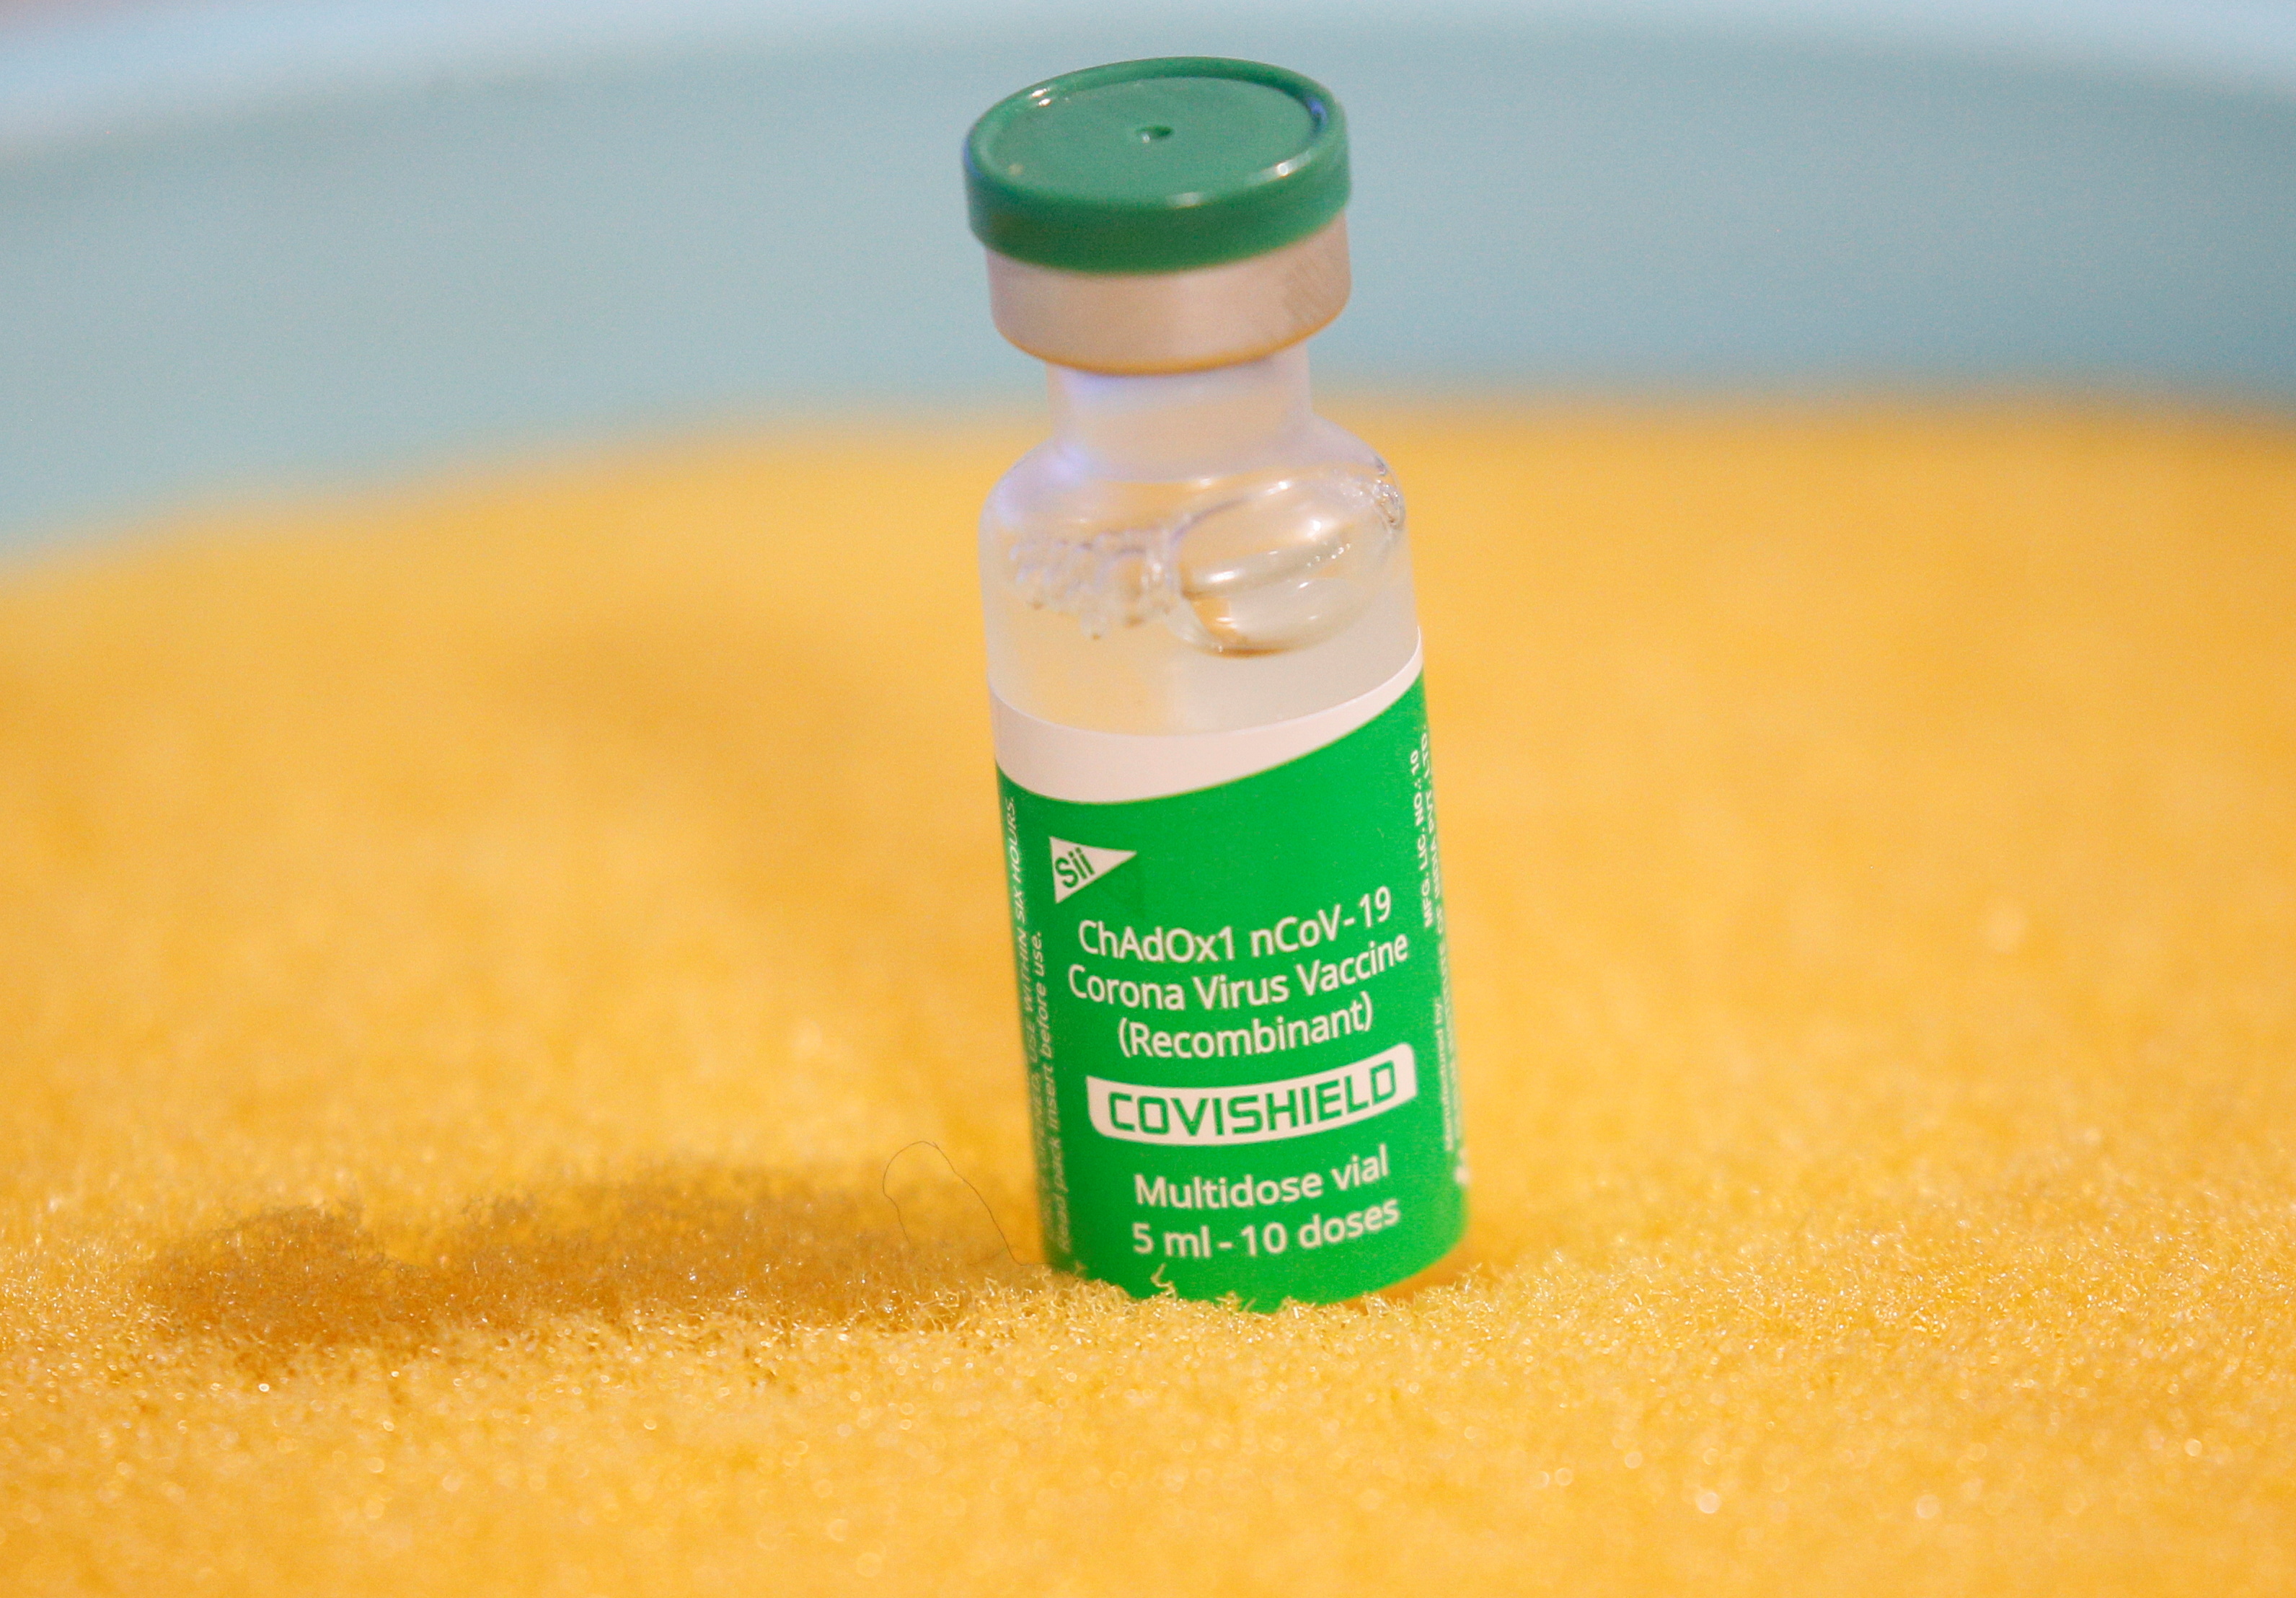 Al realizar el recuento después de la recuperación de vacunas robadas, los investigadores notaron que faltaban 68 dosis de la Covishield (REUTERS/Gleb Garanich)